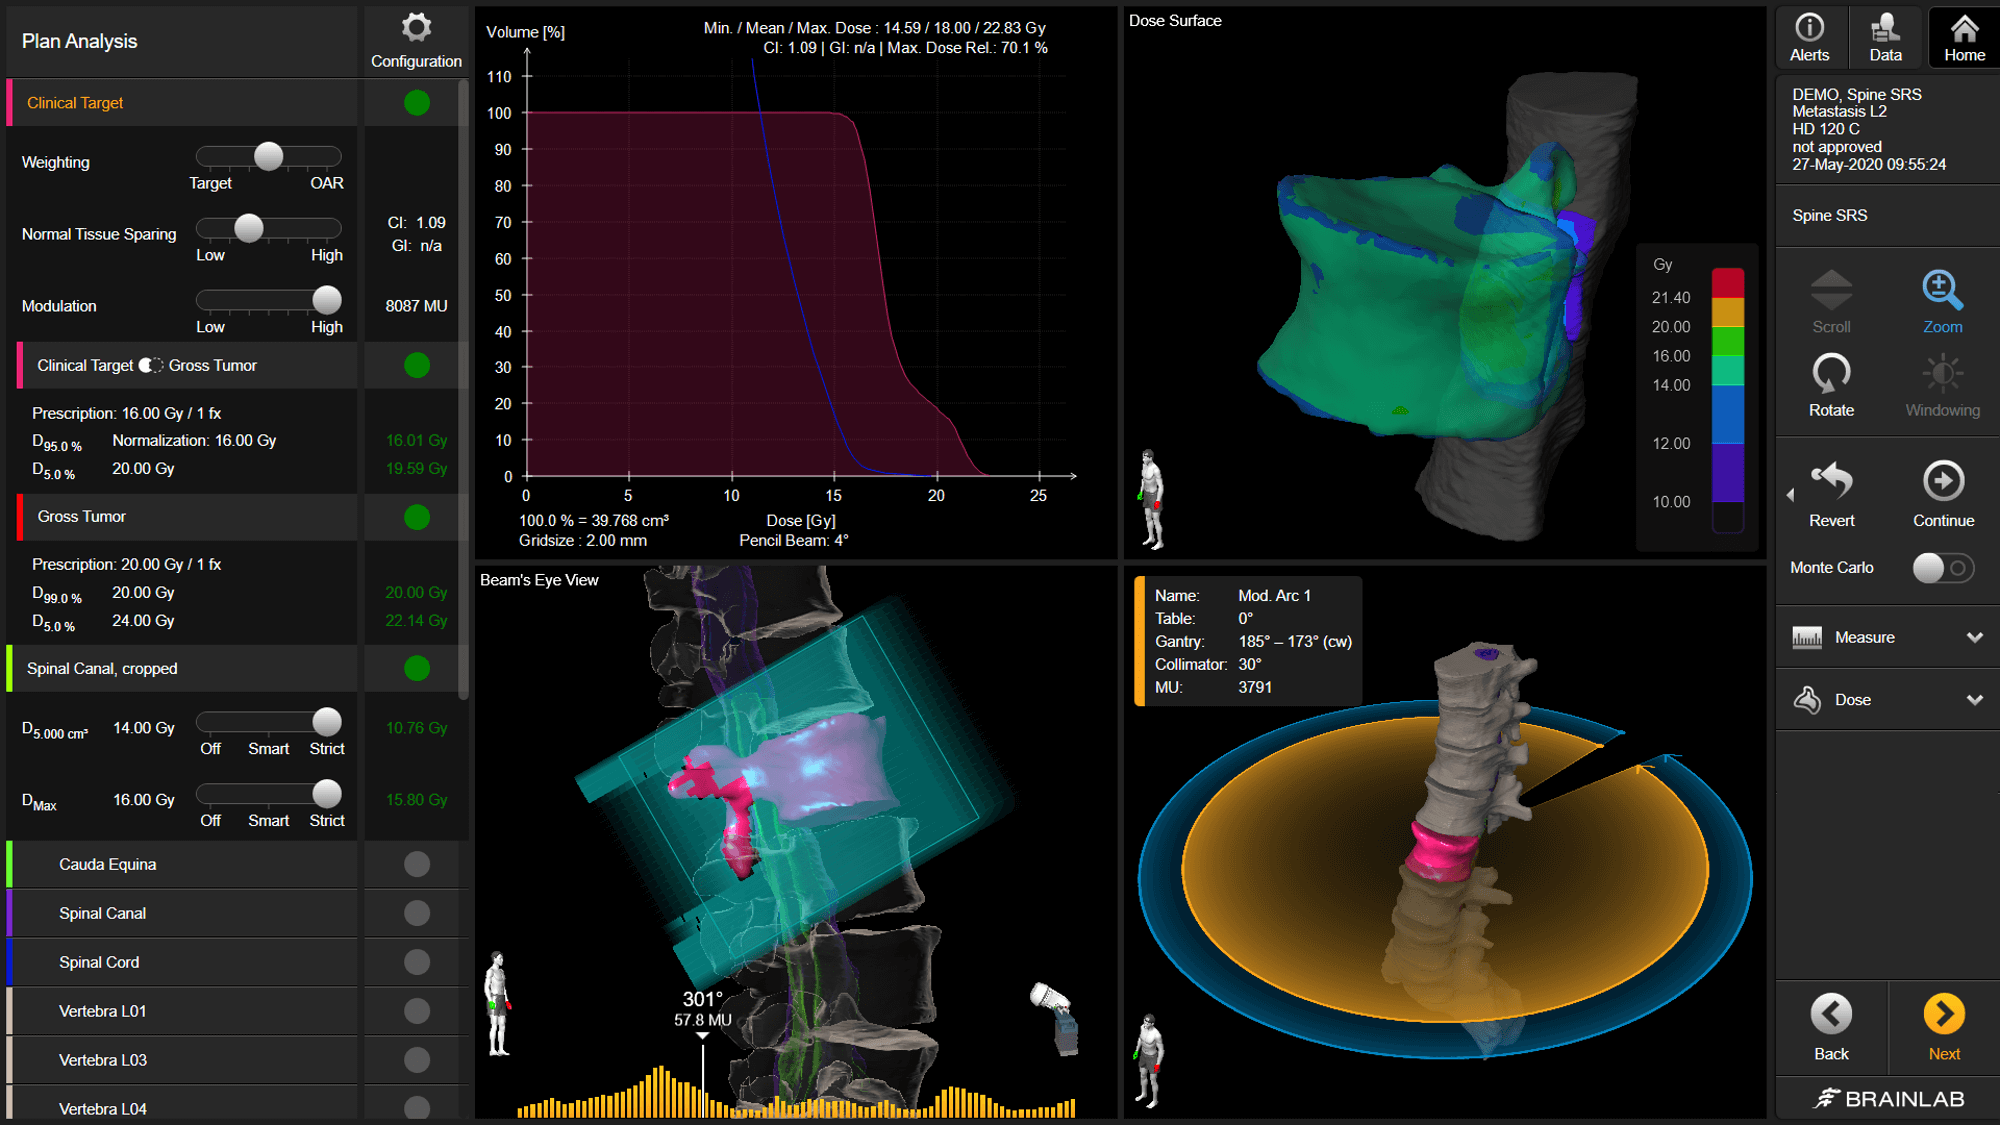 Capture d’écran du logiciel Elements Spine SRS et des divers outils qu’il propose pour visualiser la dose créée pour un plan de radiothérapie.